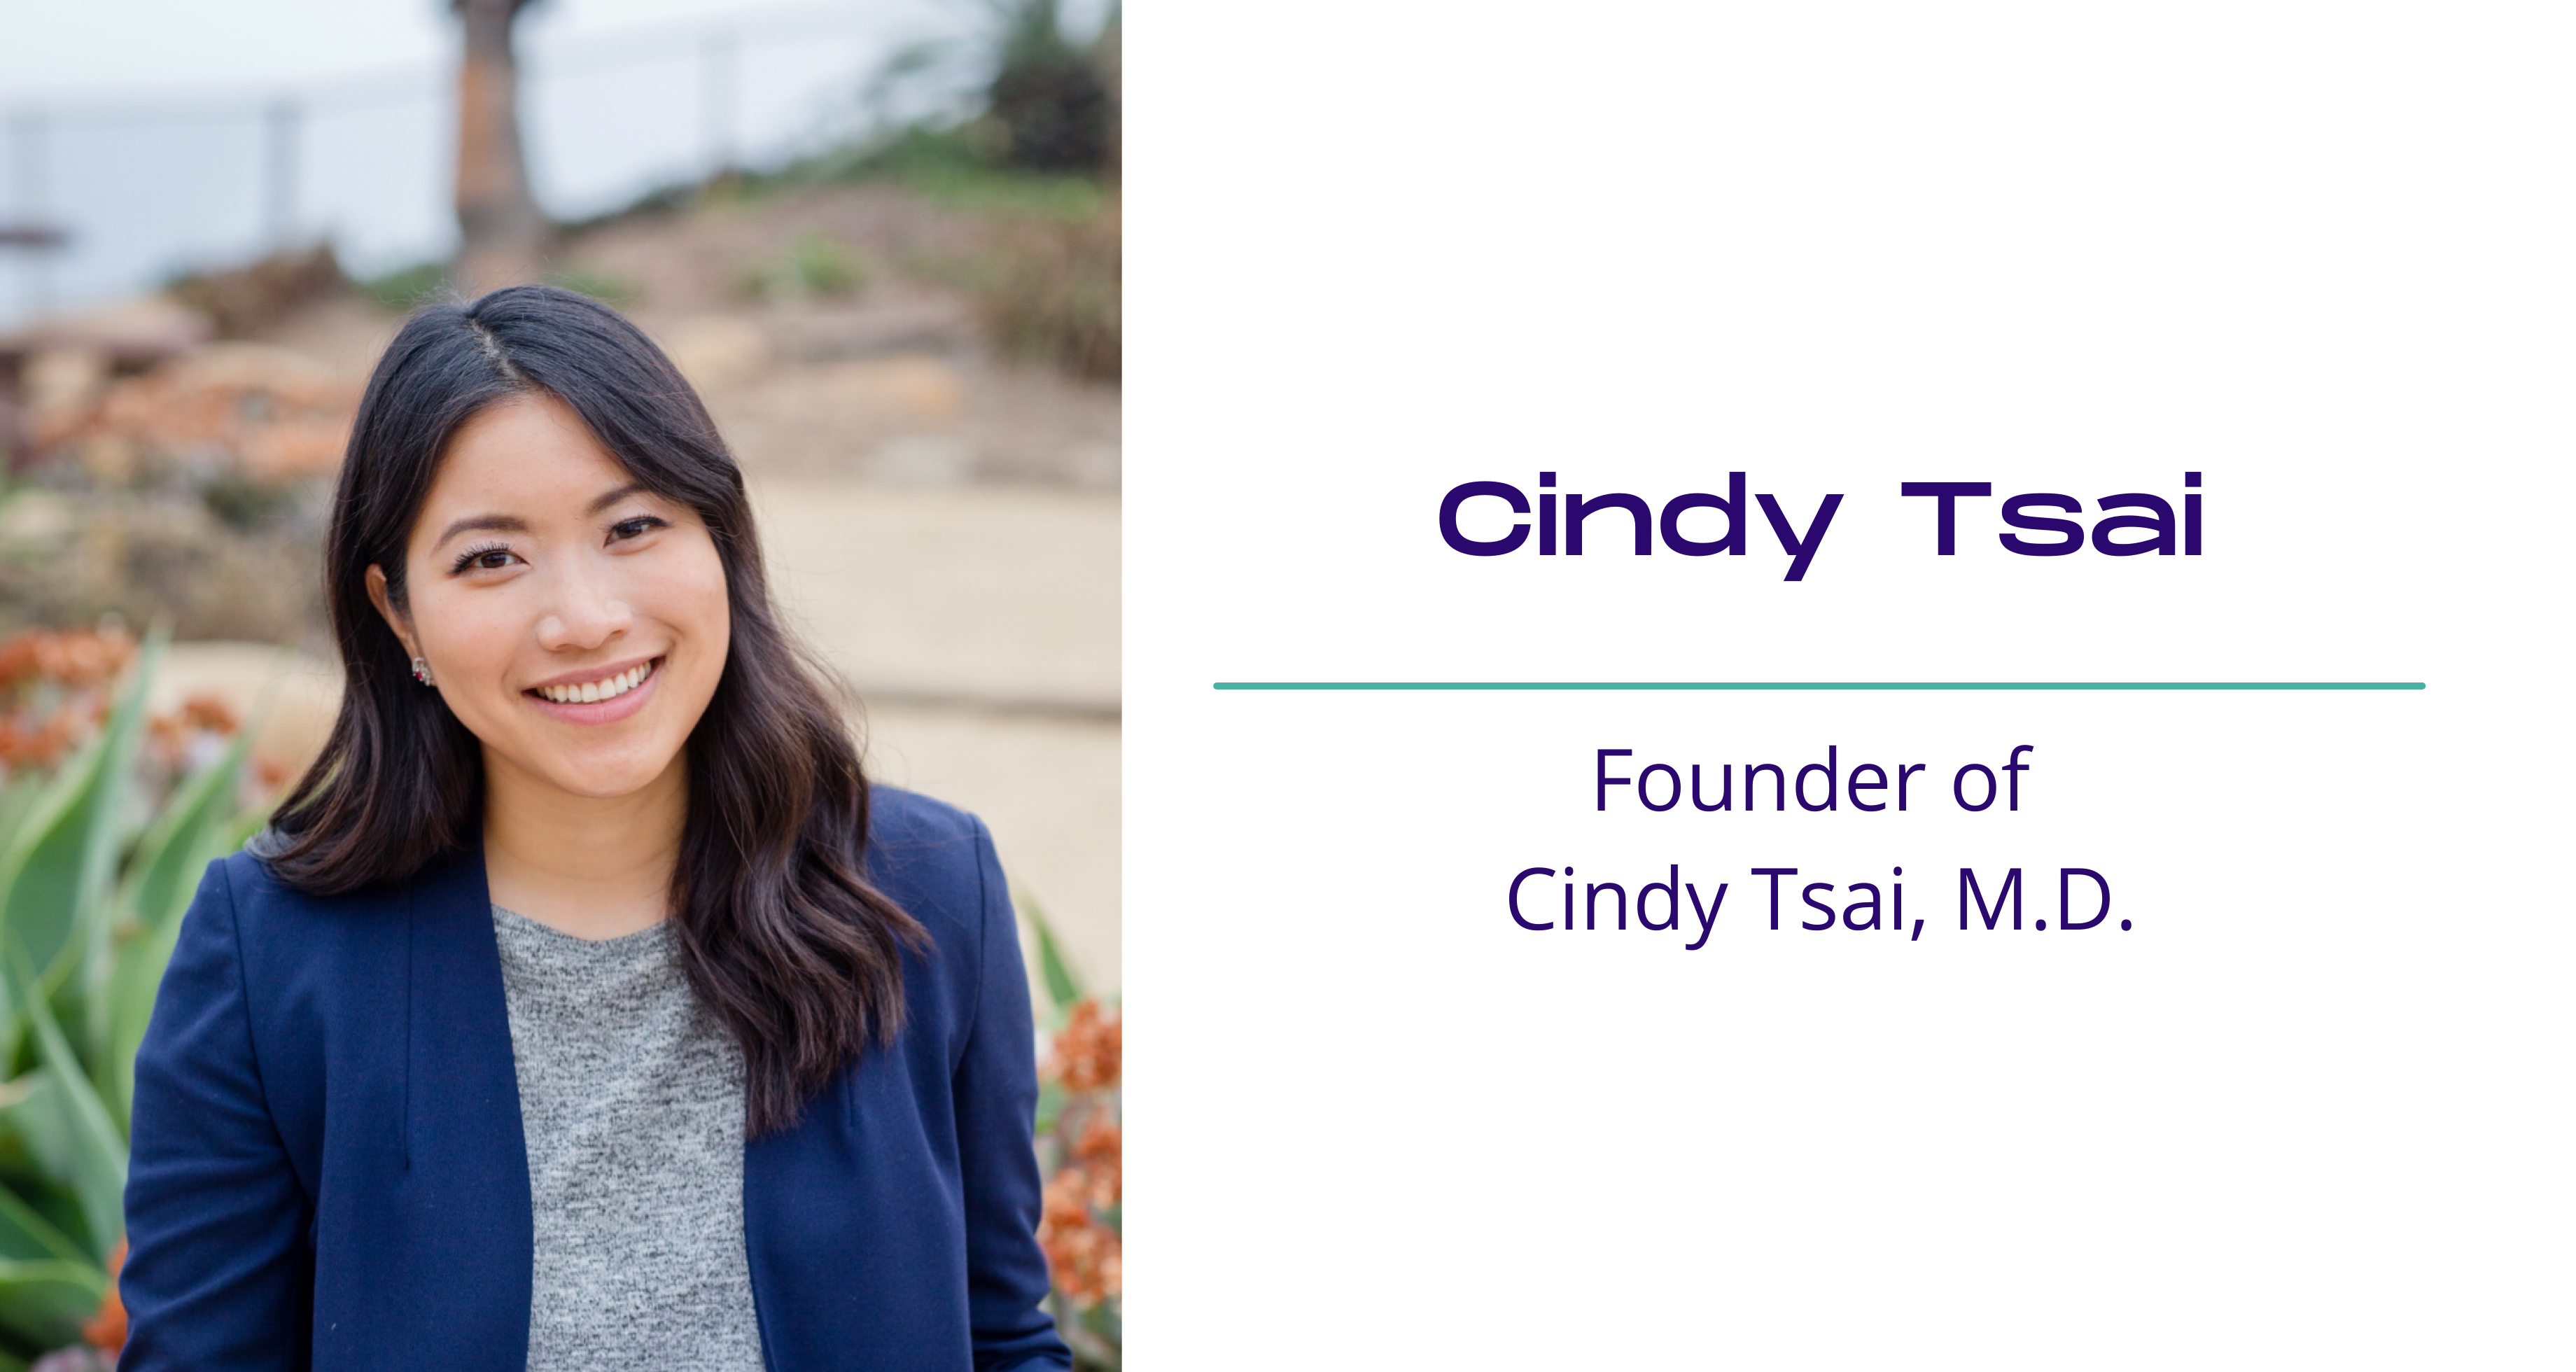 Cindy Tsai, M.D. and Life Coach